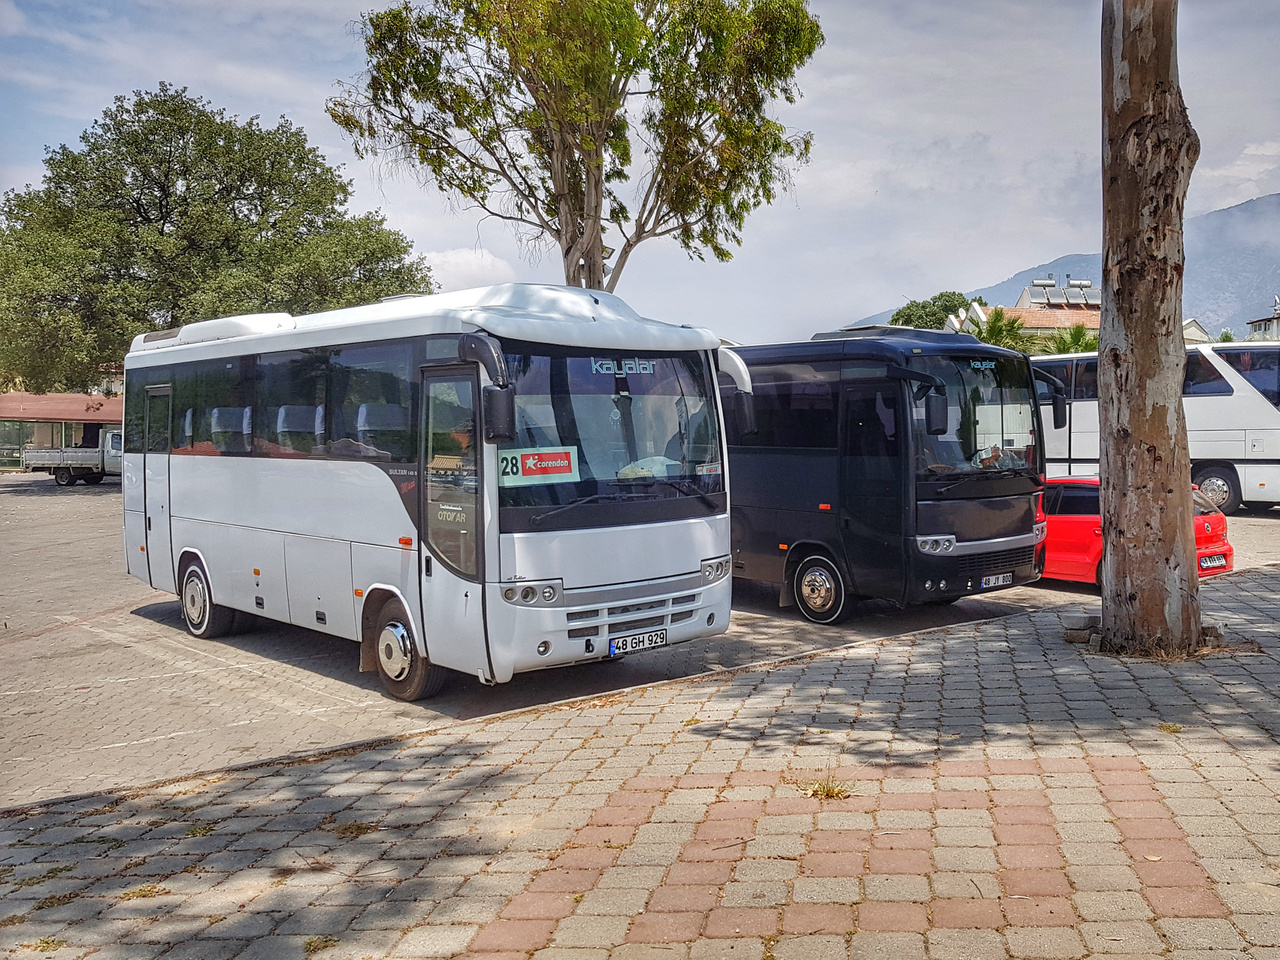 A Koç birodalom másik ékköve az Otokar, amelynek főleg mini- és midibuszaival elvétve itthon is találkozhatunk. A kisméretű Sultan széria nagyon fontos szerepet játszik a rövid- és közepes távú személyszállítás területén, de természetesen gyártanak teljes méretű, távolsági közlekedésre alkalmas buszokat is. Ez a cég is 1963 óta létezik folyamatosan és ők is gyártanak a hadiipar számára, hasonlóan a BMC-hez